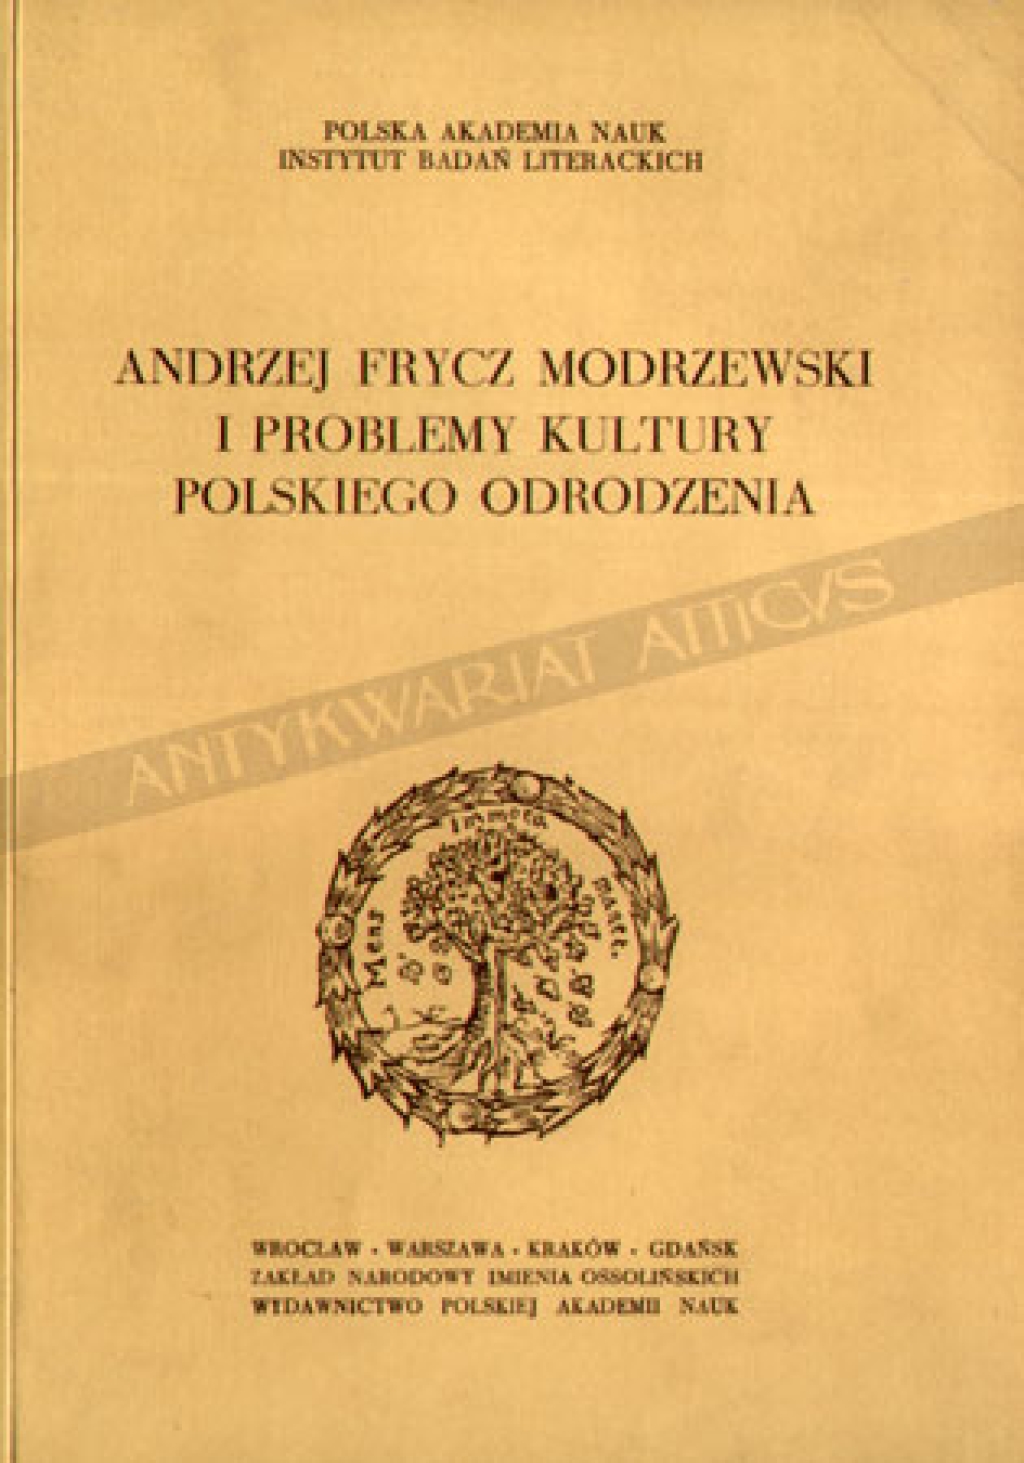 Andrzej Frycz Modrzewski i problemy kultury polskiego odrodzenia